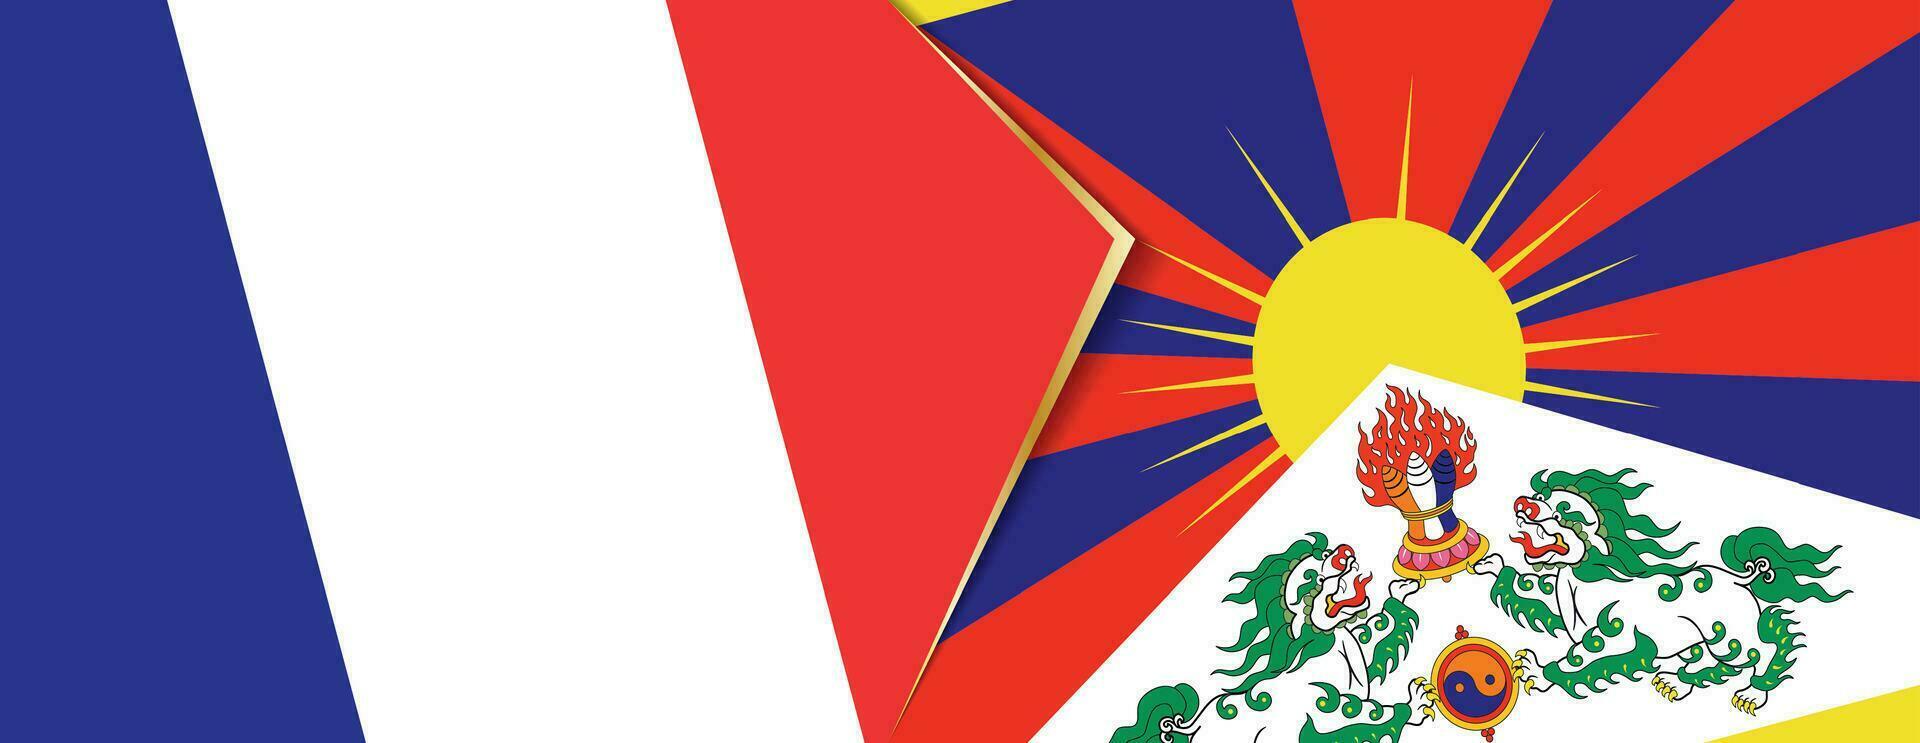 Francia y Tíbet banderas, dos vector banderas